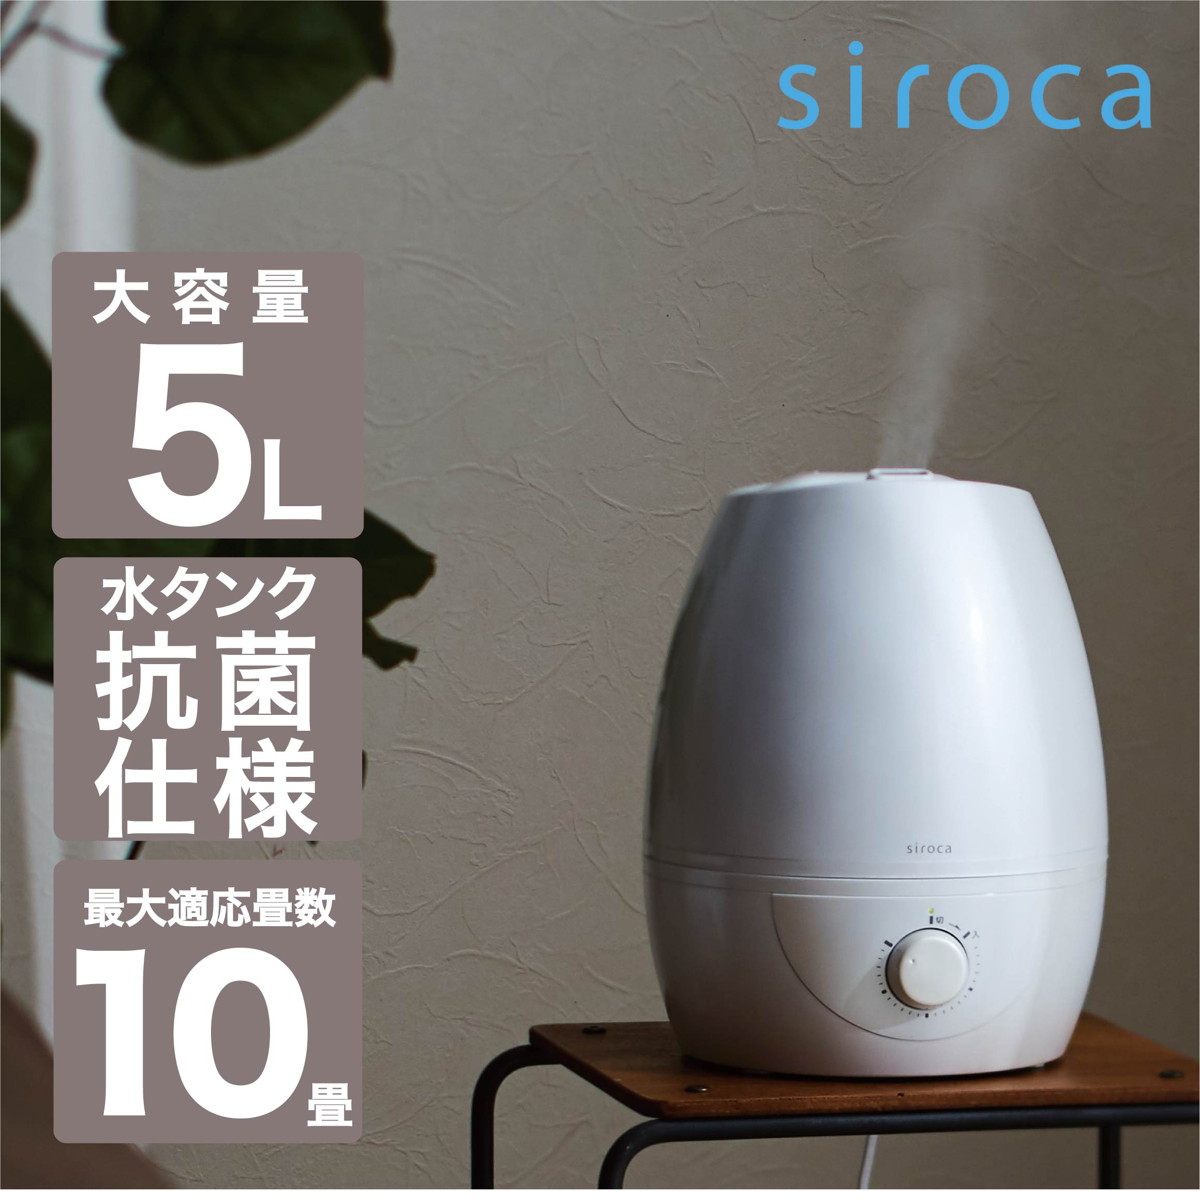 siroca 5L 超音波式加湿器 パールホワイト